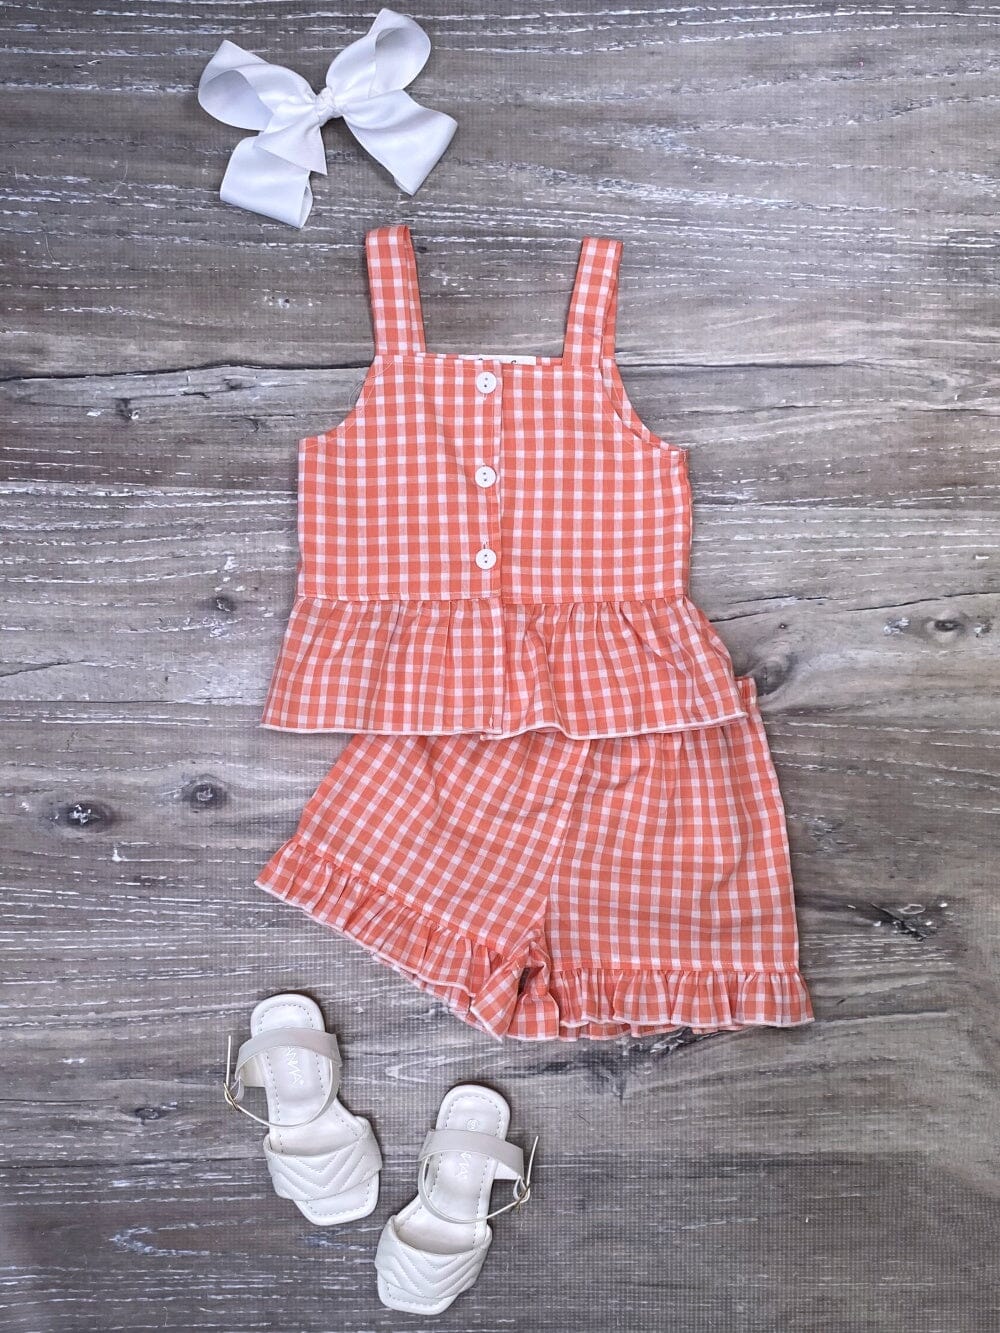 Orange & White Classic Gingham Ruffle Girls Shorts Outfit - Sydney So Sweet